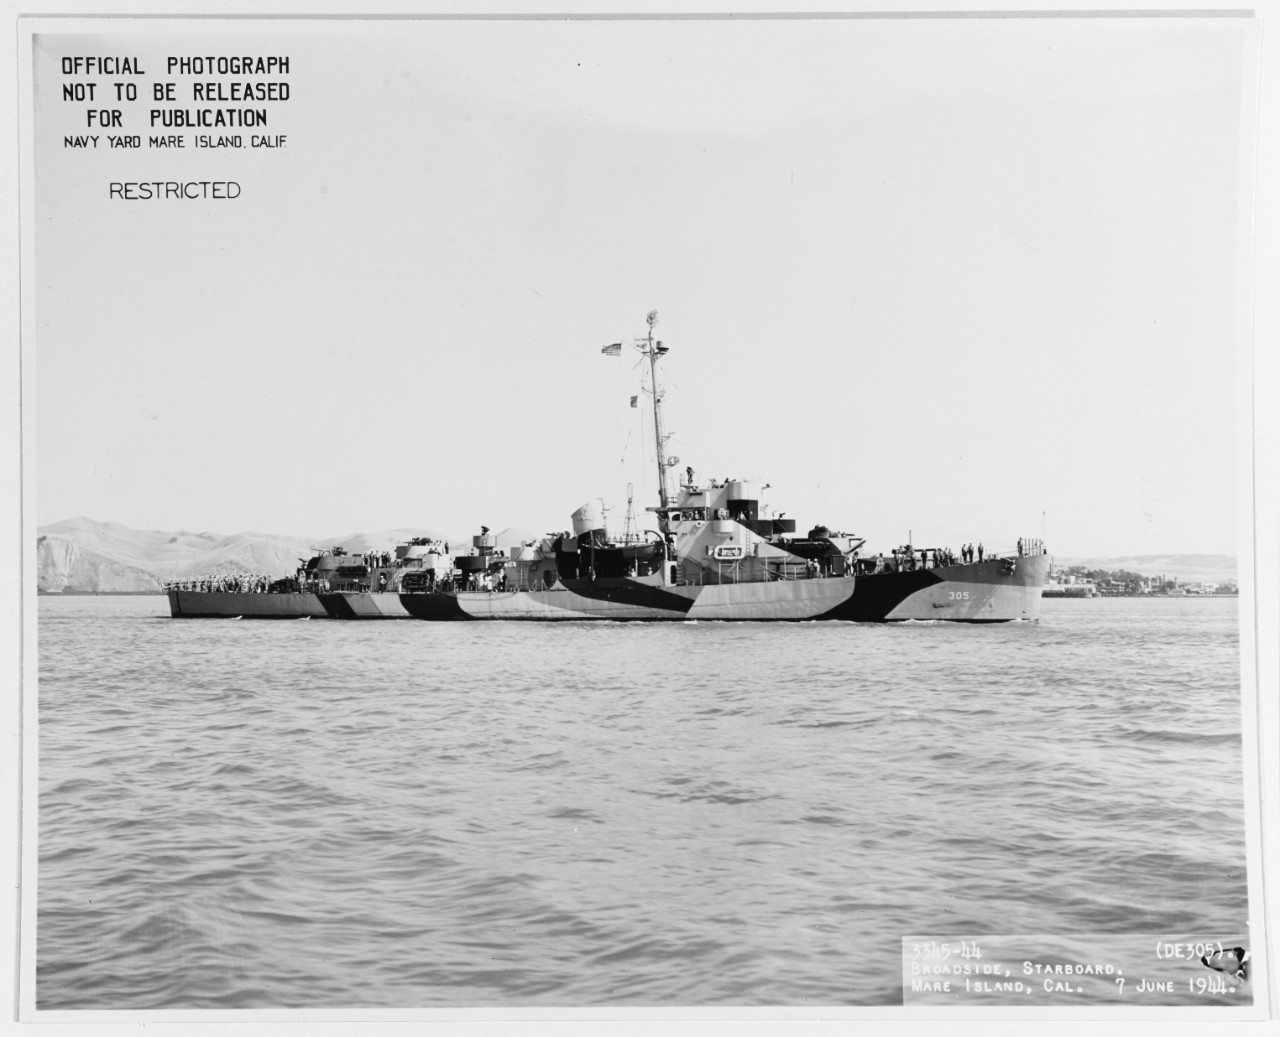 USS HALLORAN (DE-305)